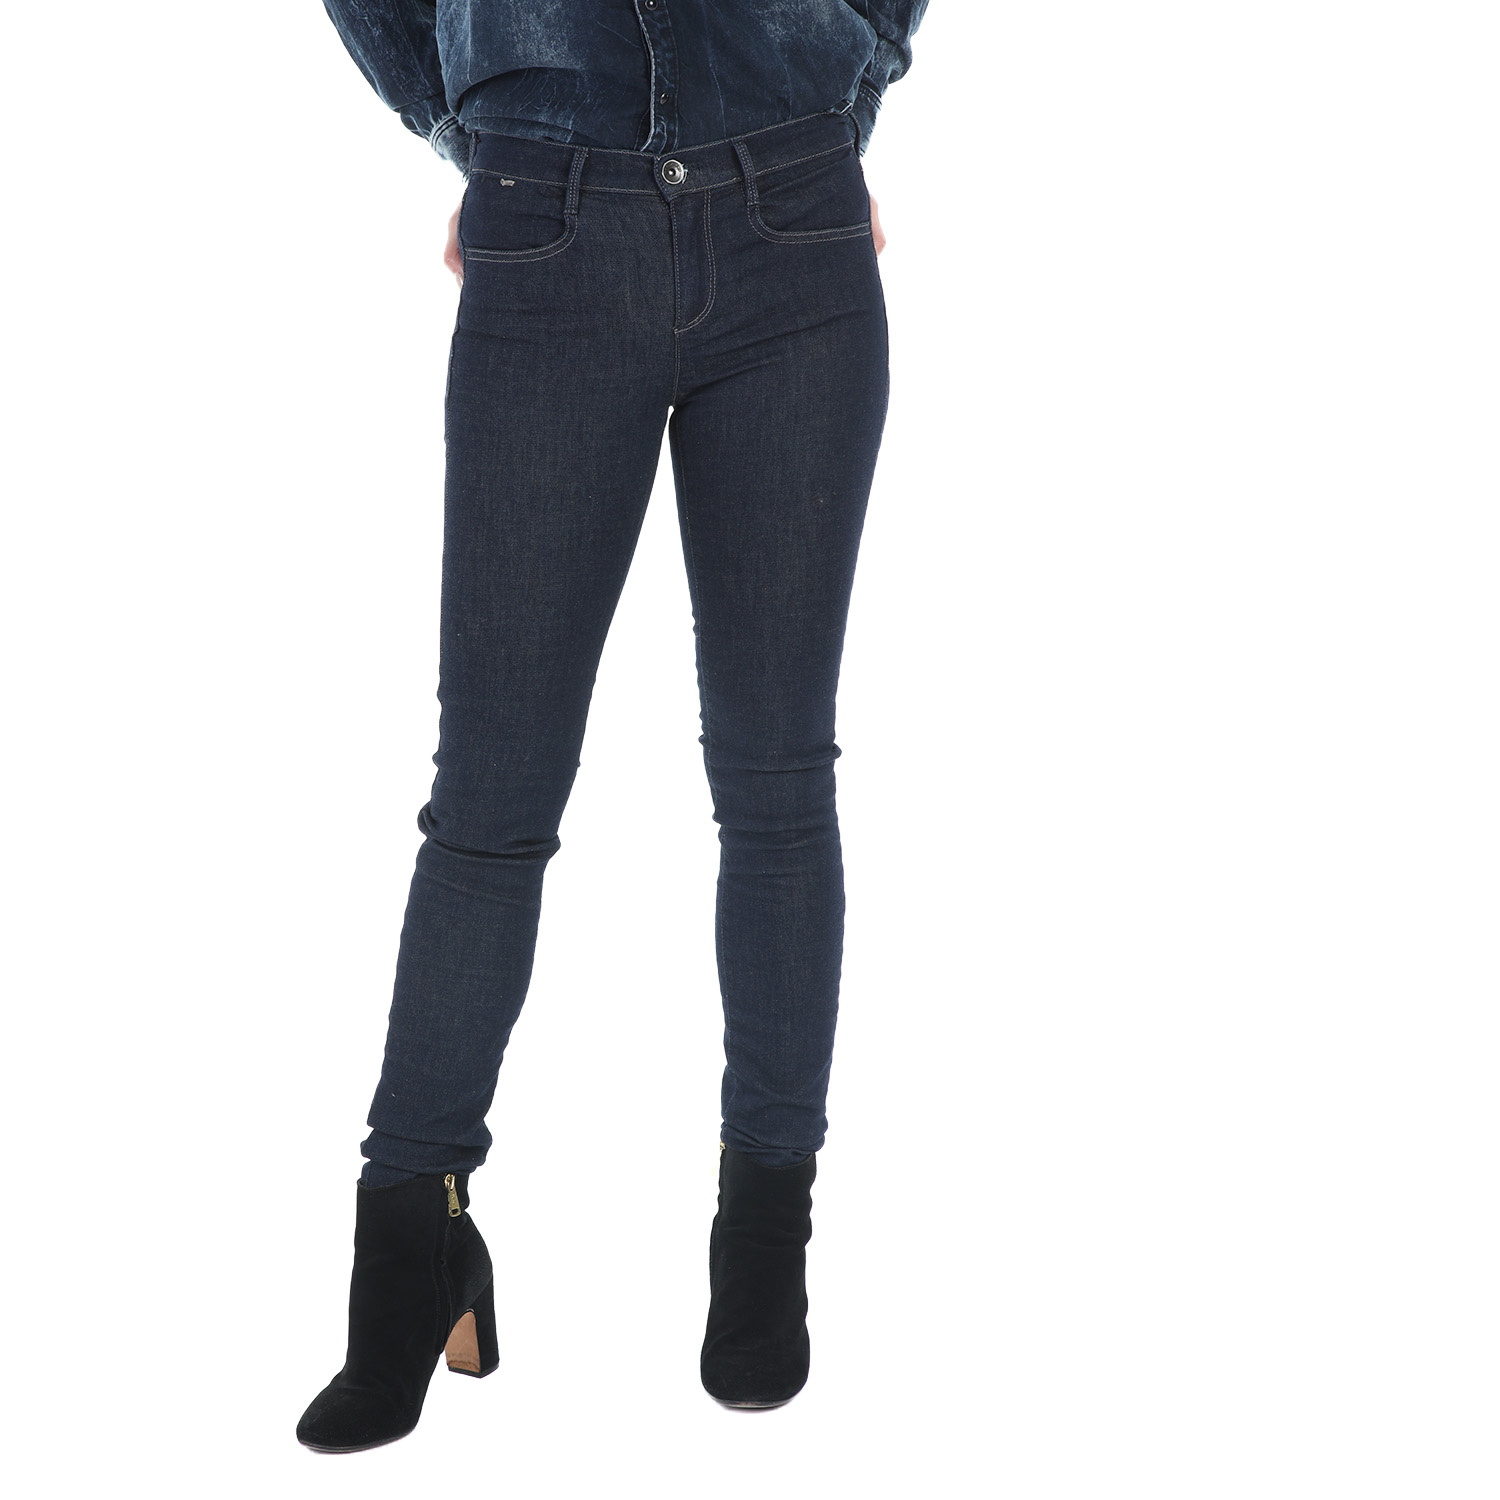 Γυναικεία/Ρούχα/Τζίν/Skinny GAS - Γυναικείο τζιν παντελόνι GAS SOPHIE 5 TASCHE μπλε